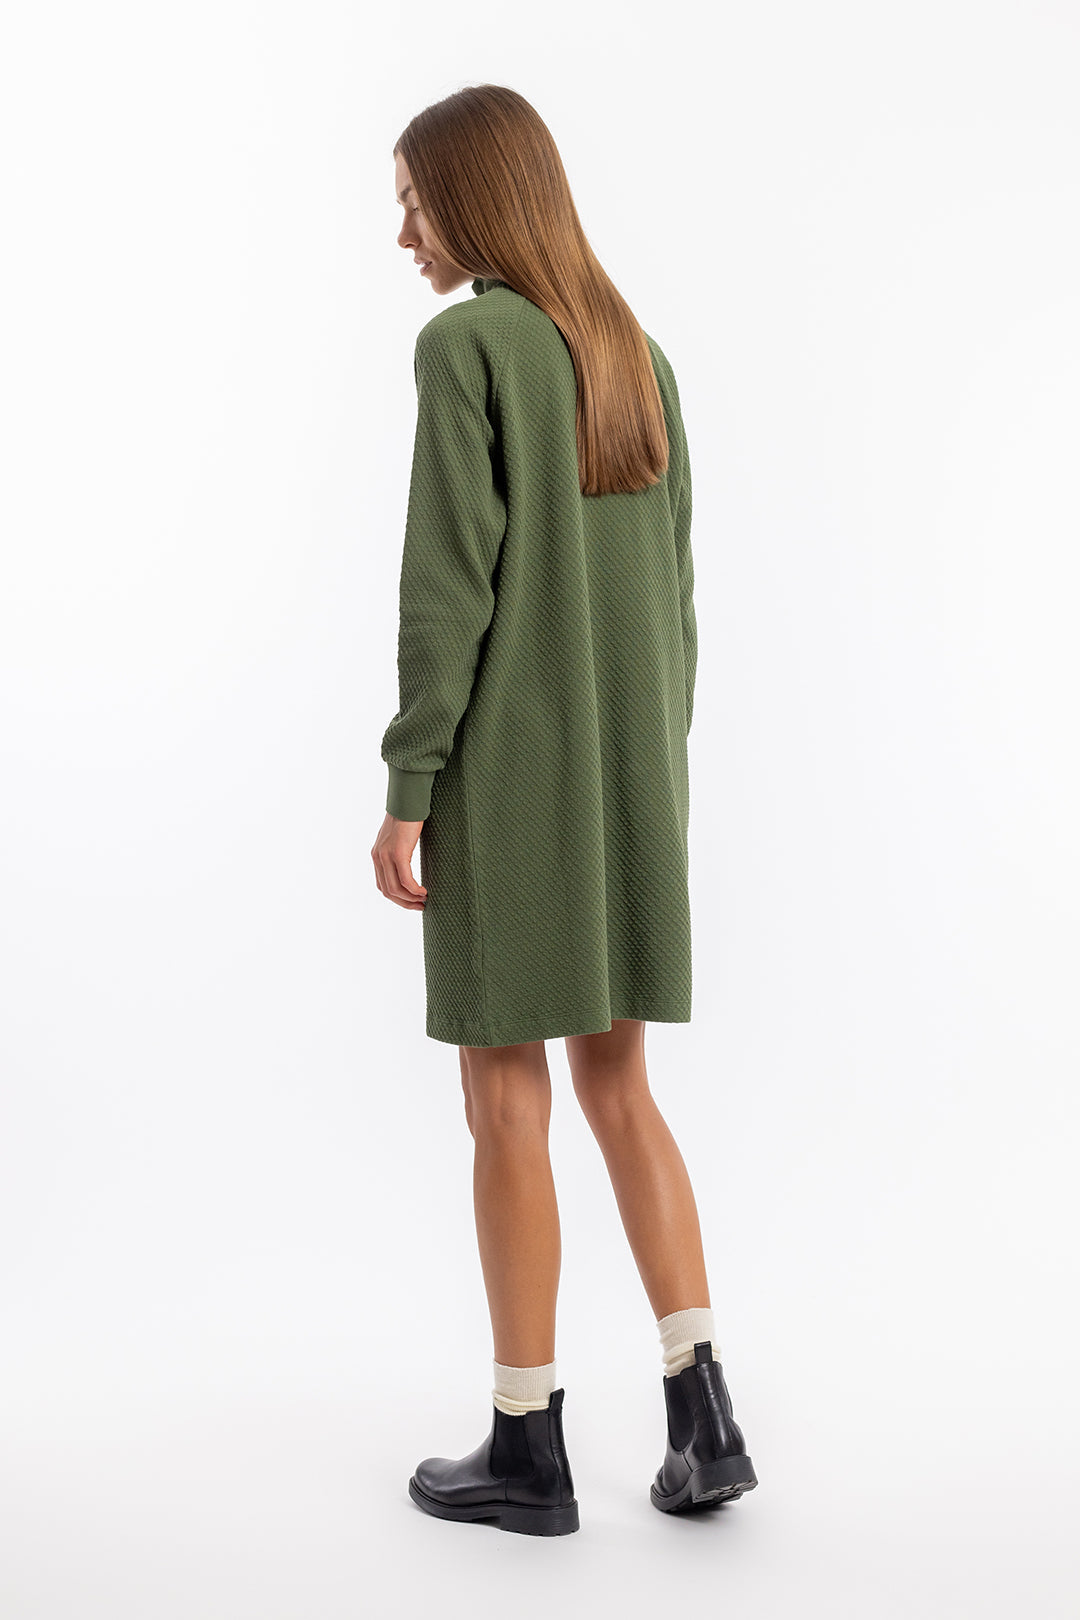 Grünes Sweatshirt-Kleid aus 100% Bio-Baumwolle von Rotholz